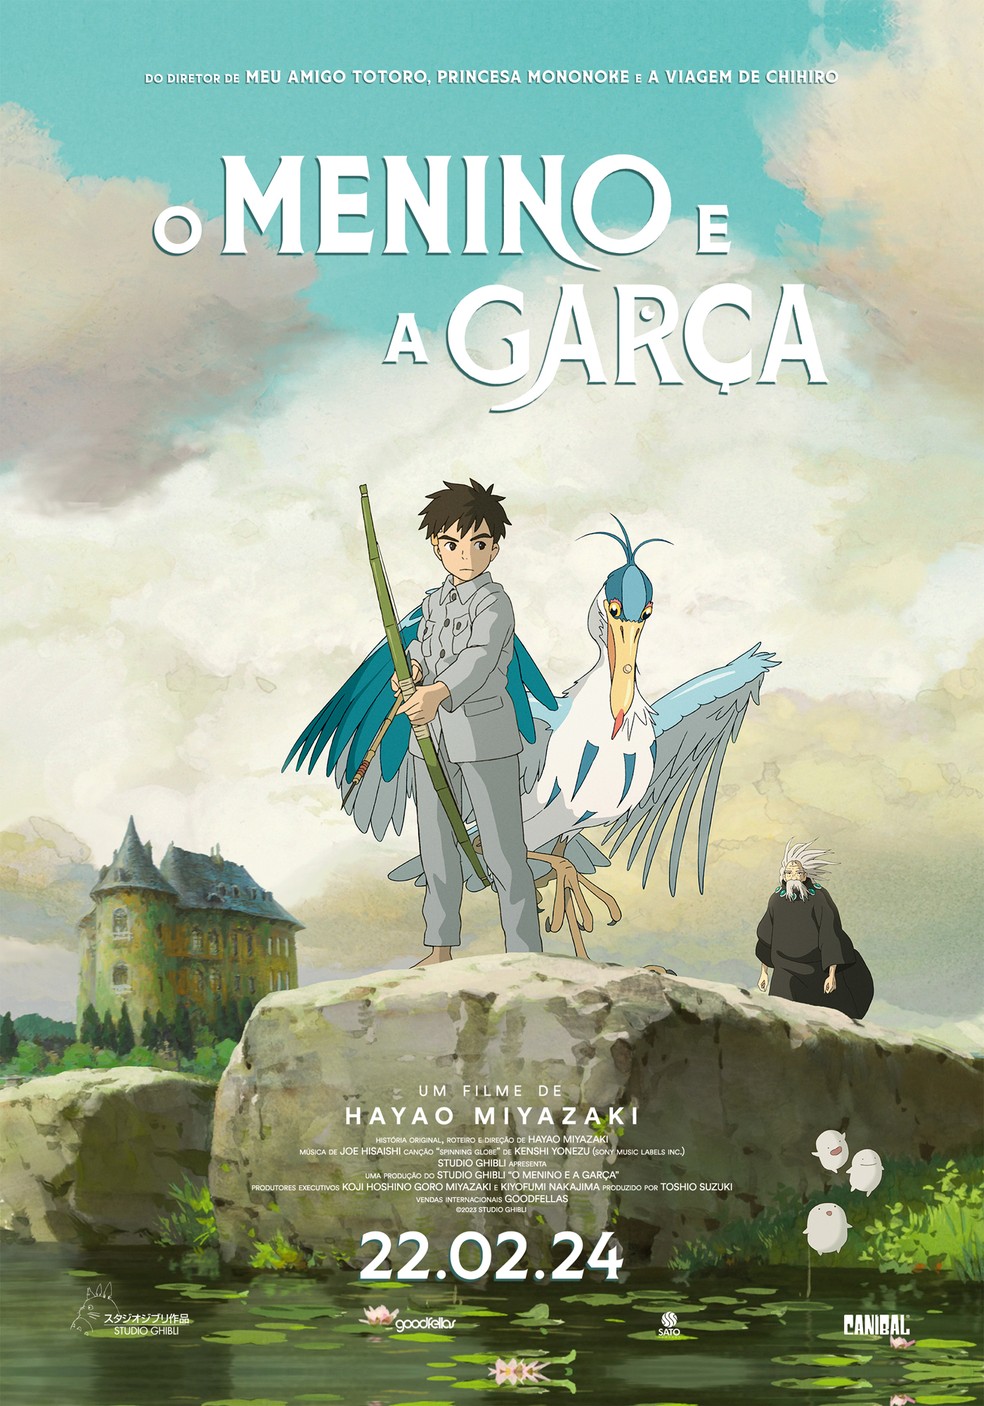 O Menino e a Garça': novo filme de Hayao Miyazaki ganha data no Brasil, trailer e pôster